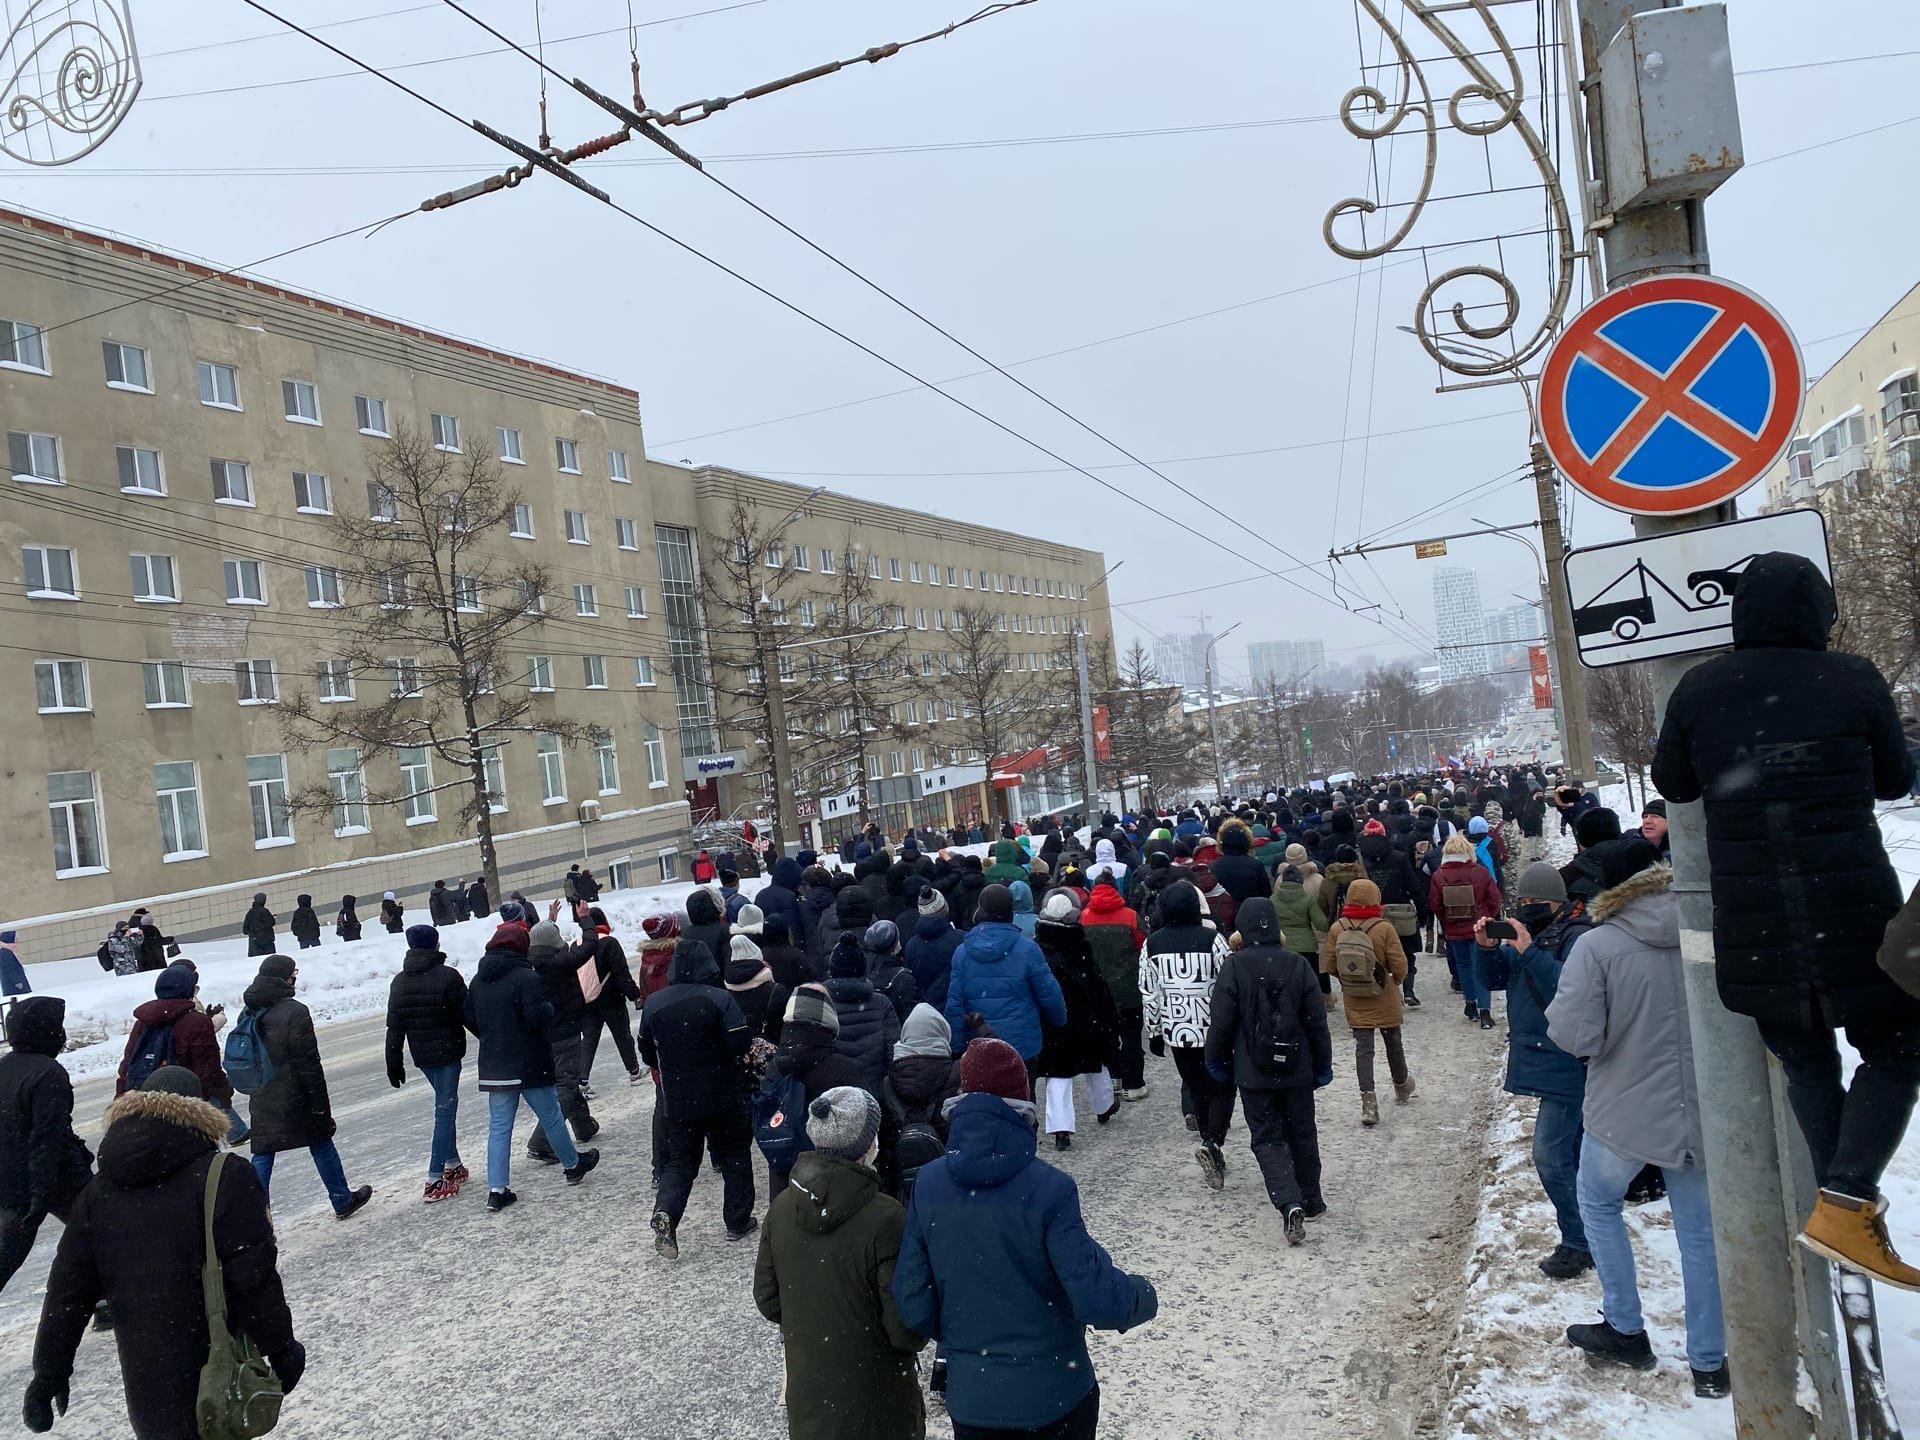 

В Ижевске возбудили уголовное дело из-за массового выхода людей на дороги в день митинга

